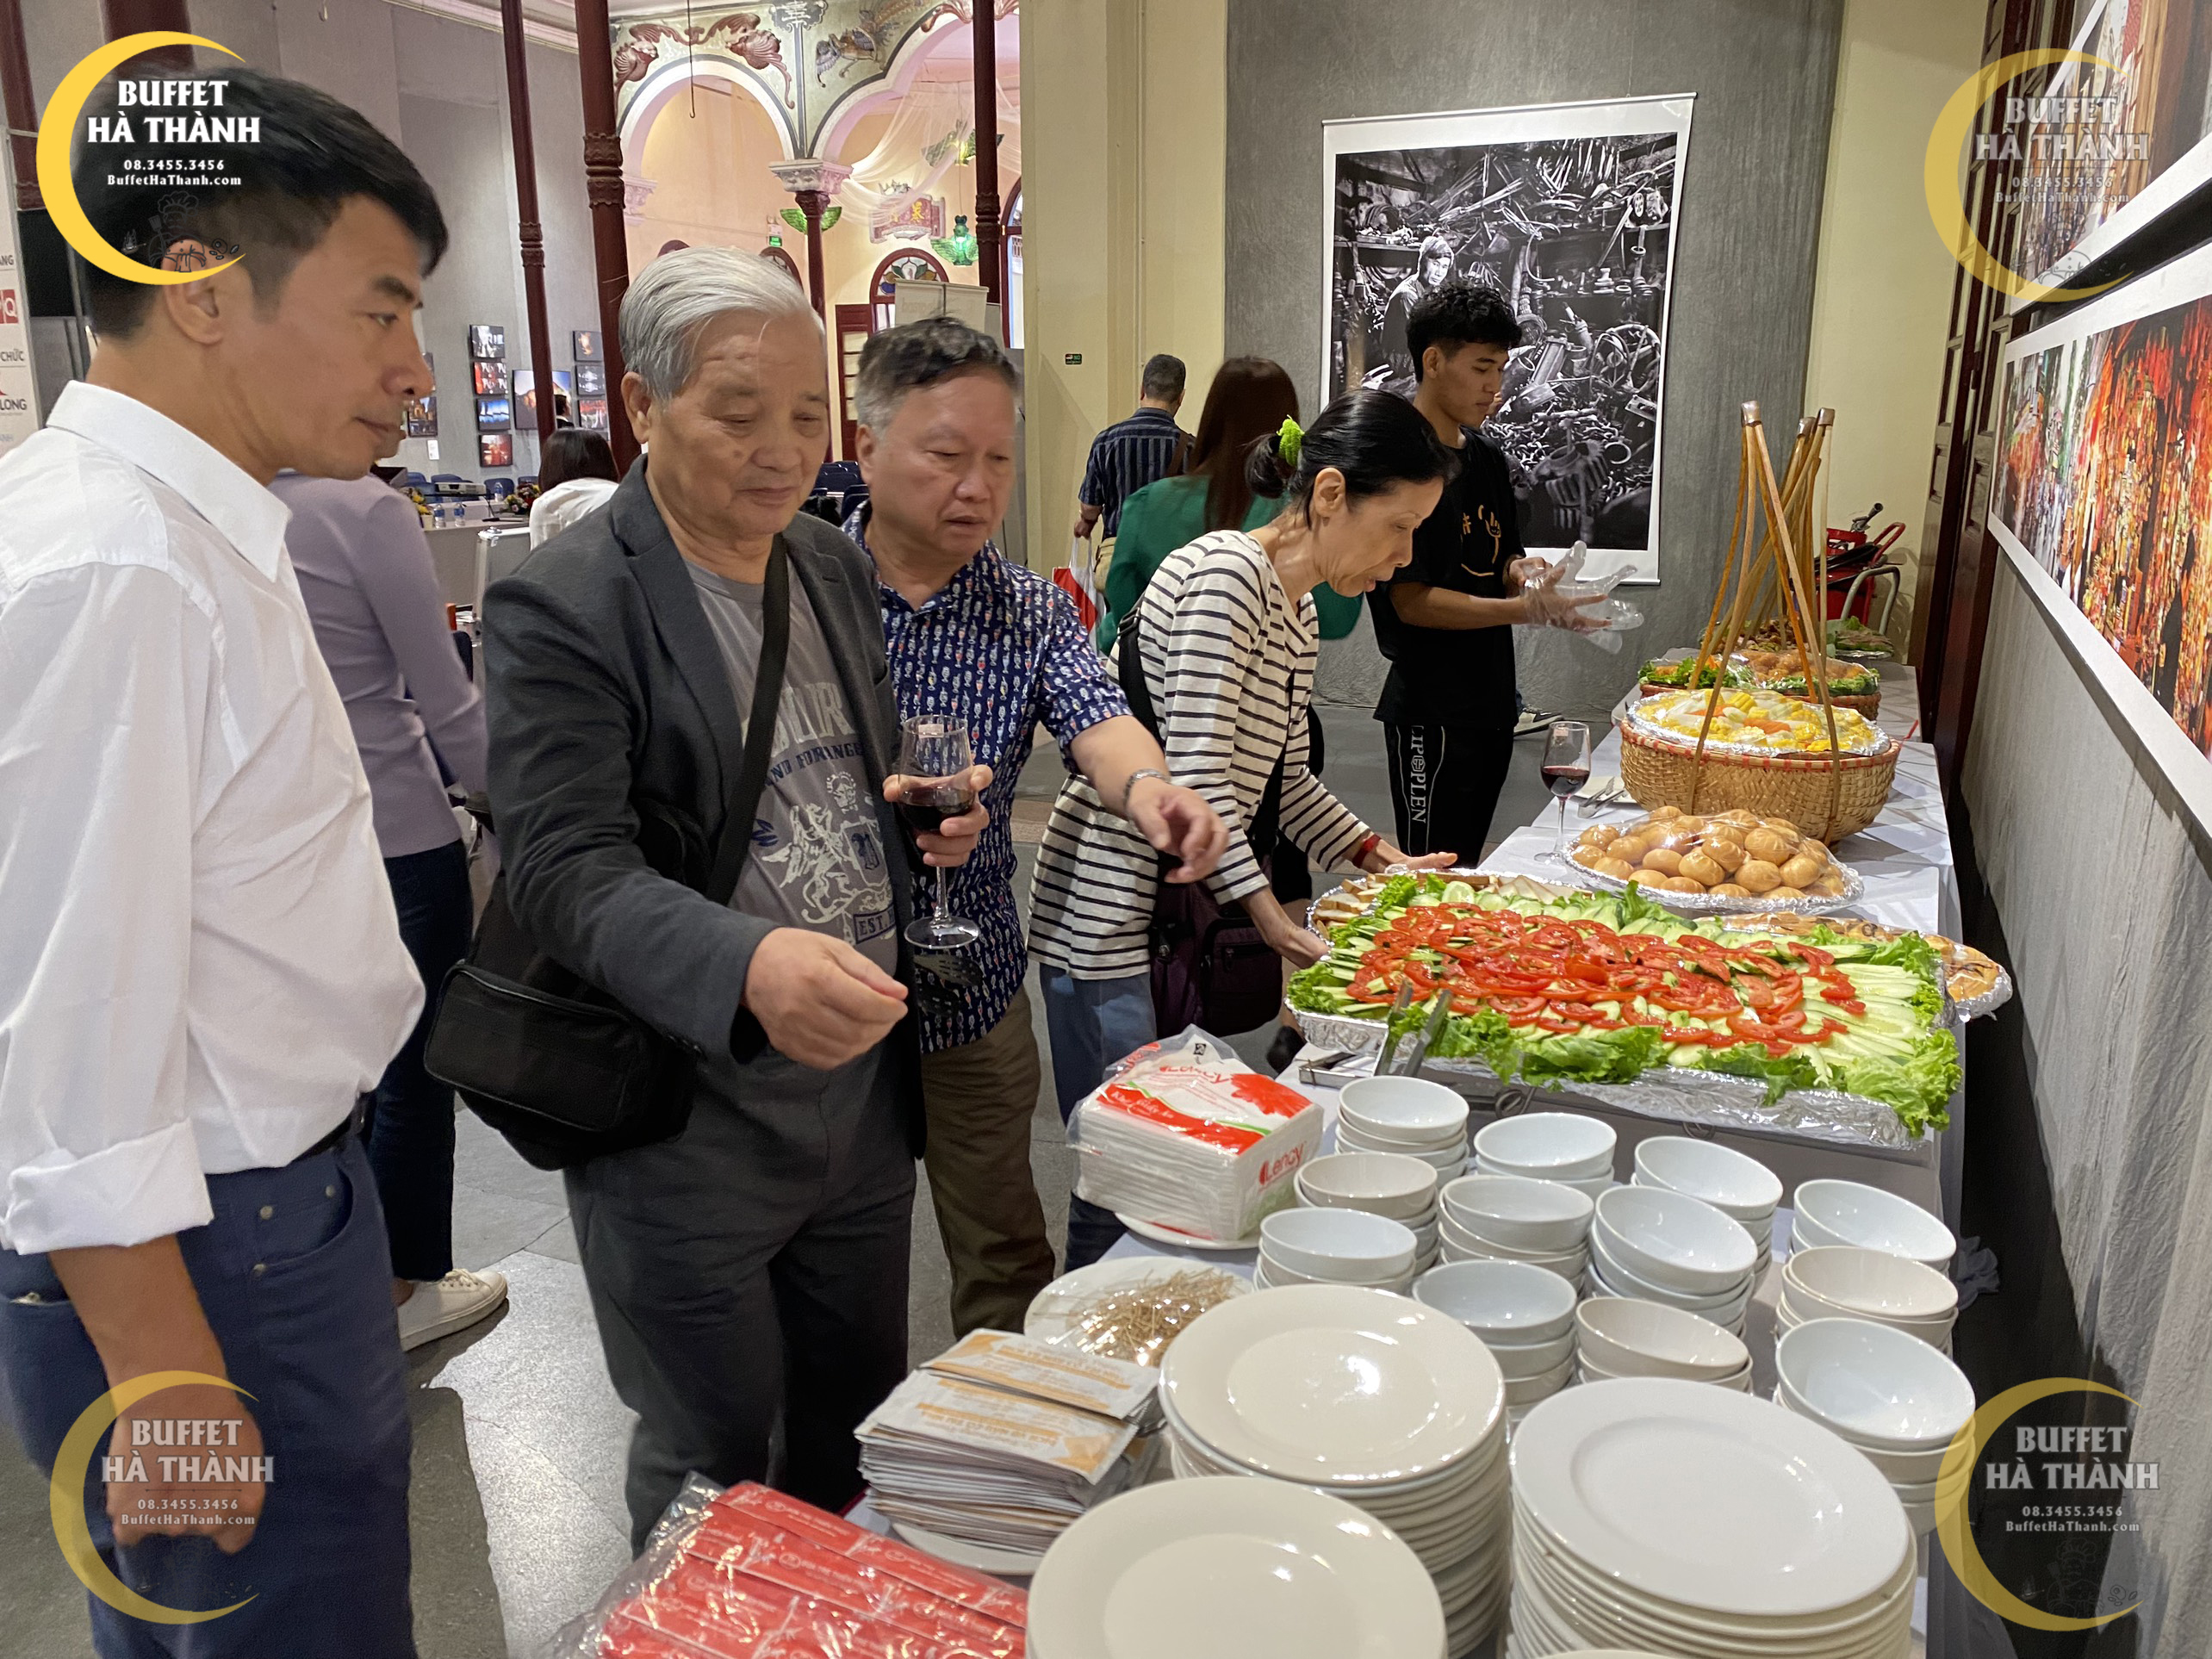 Tiệc Buffet tại hội kiến trúc sư Việt Nam -- 22 phố hàng buồm 120 khách